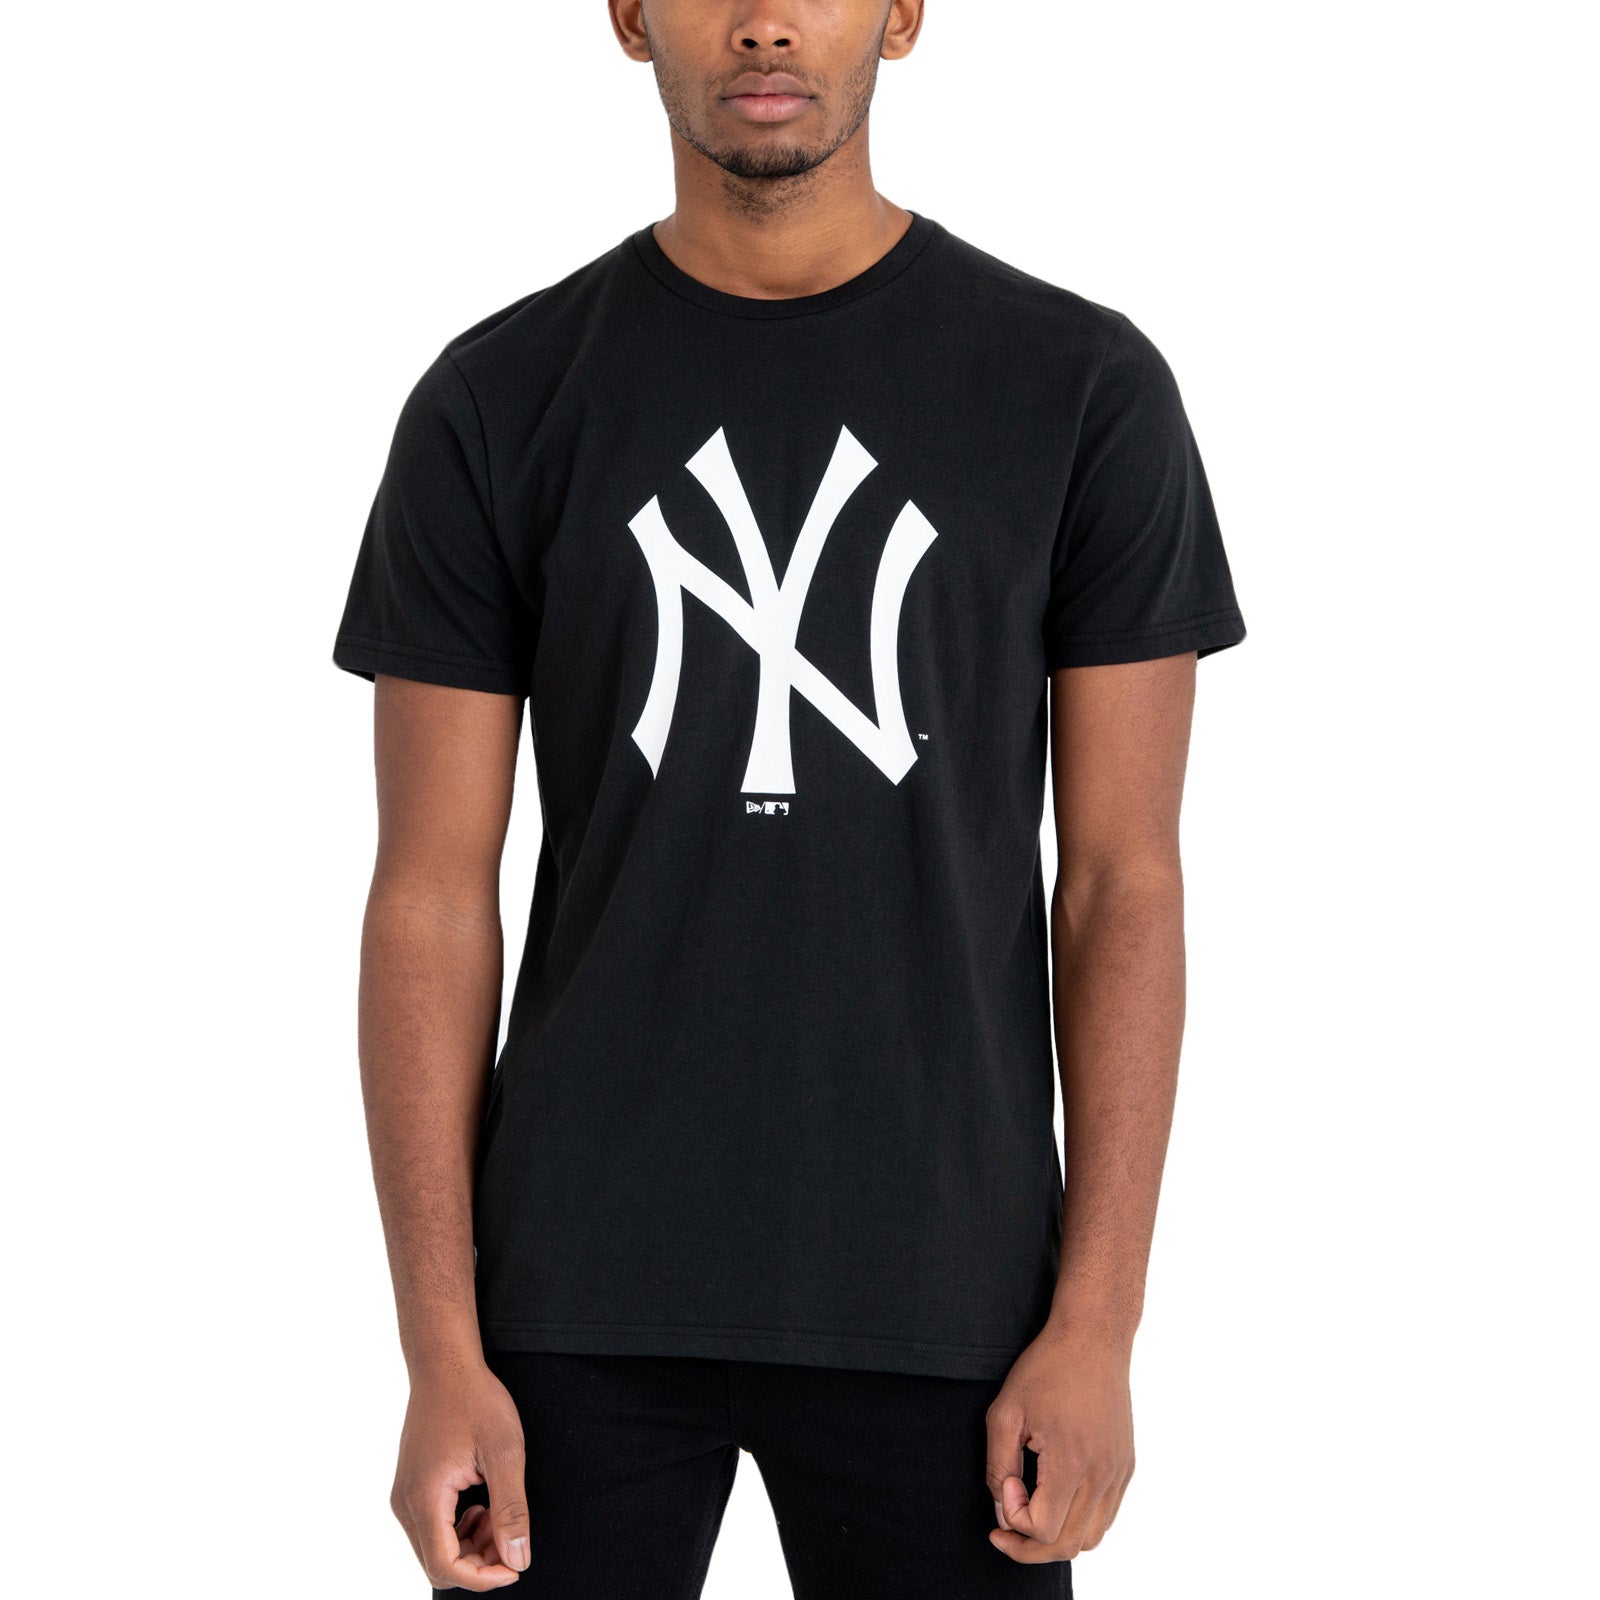 MLB Small Embroidered Logo NY Black  Youthgenes Market